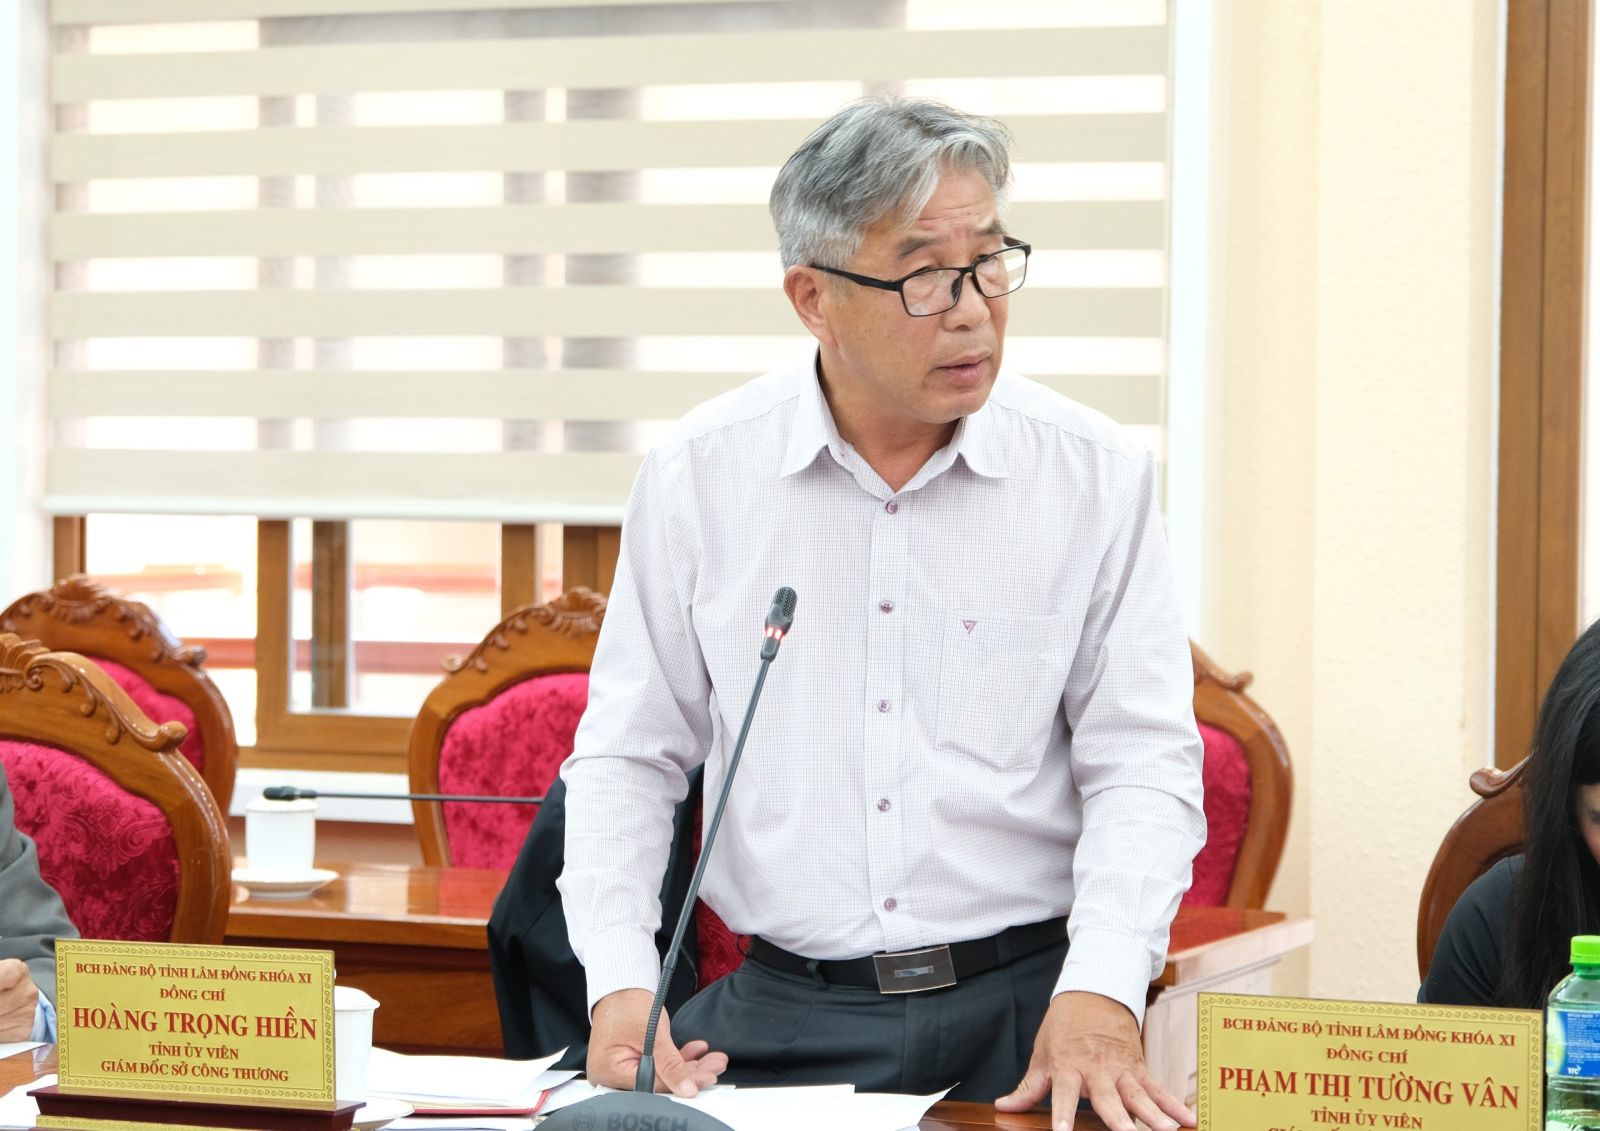 Giám đốc Sở Công thương tỉnh Lâm Đồng Hoàng Trọng Hiền nêu lên những hạn chế trong phát triển công nghiệp tại địa phương